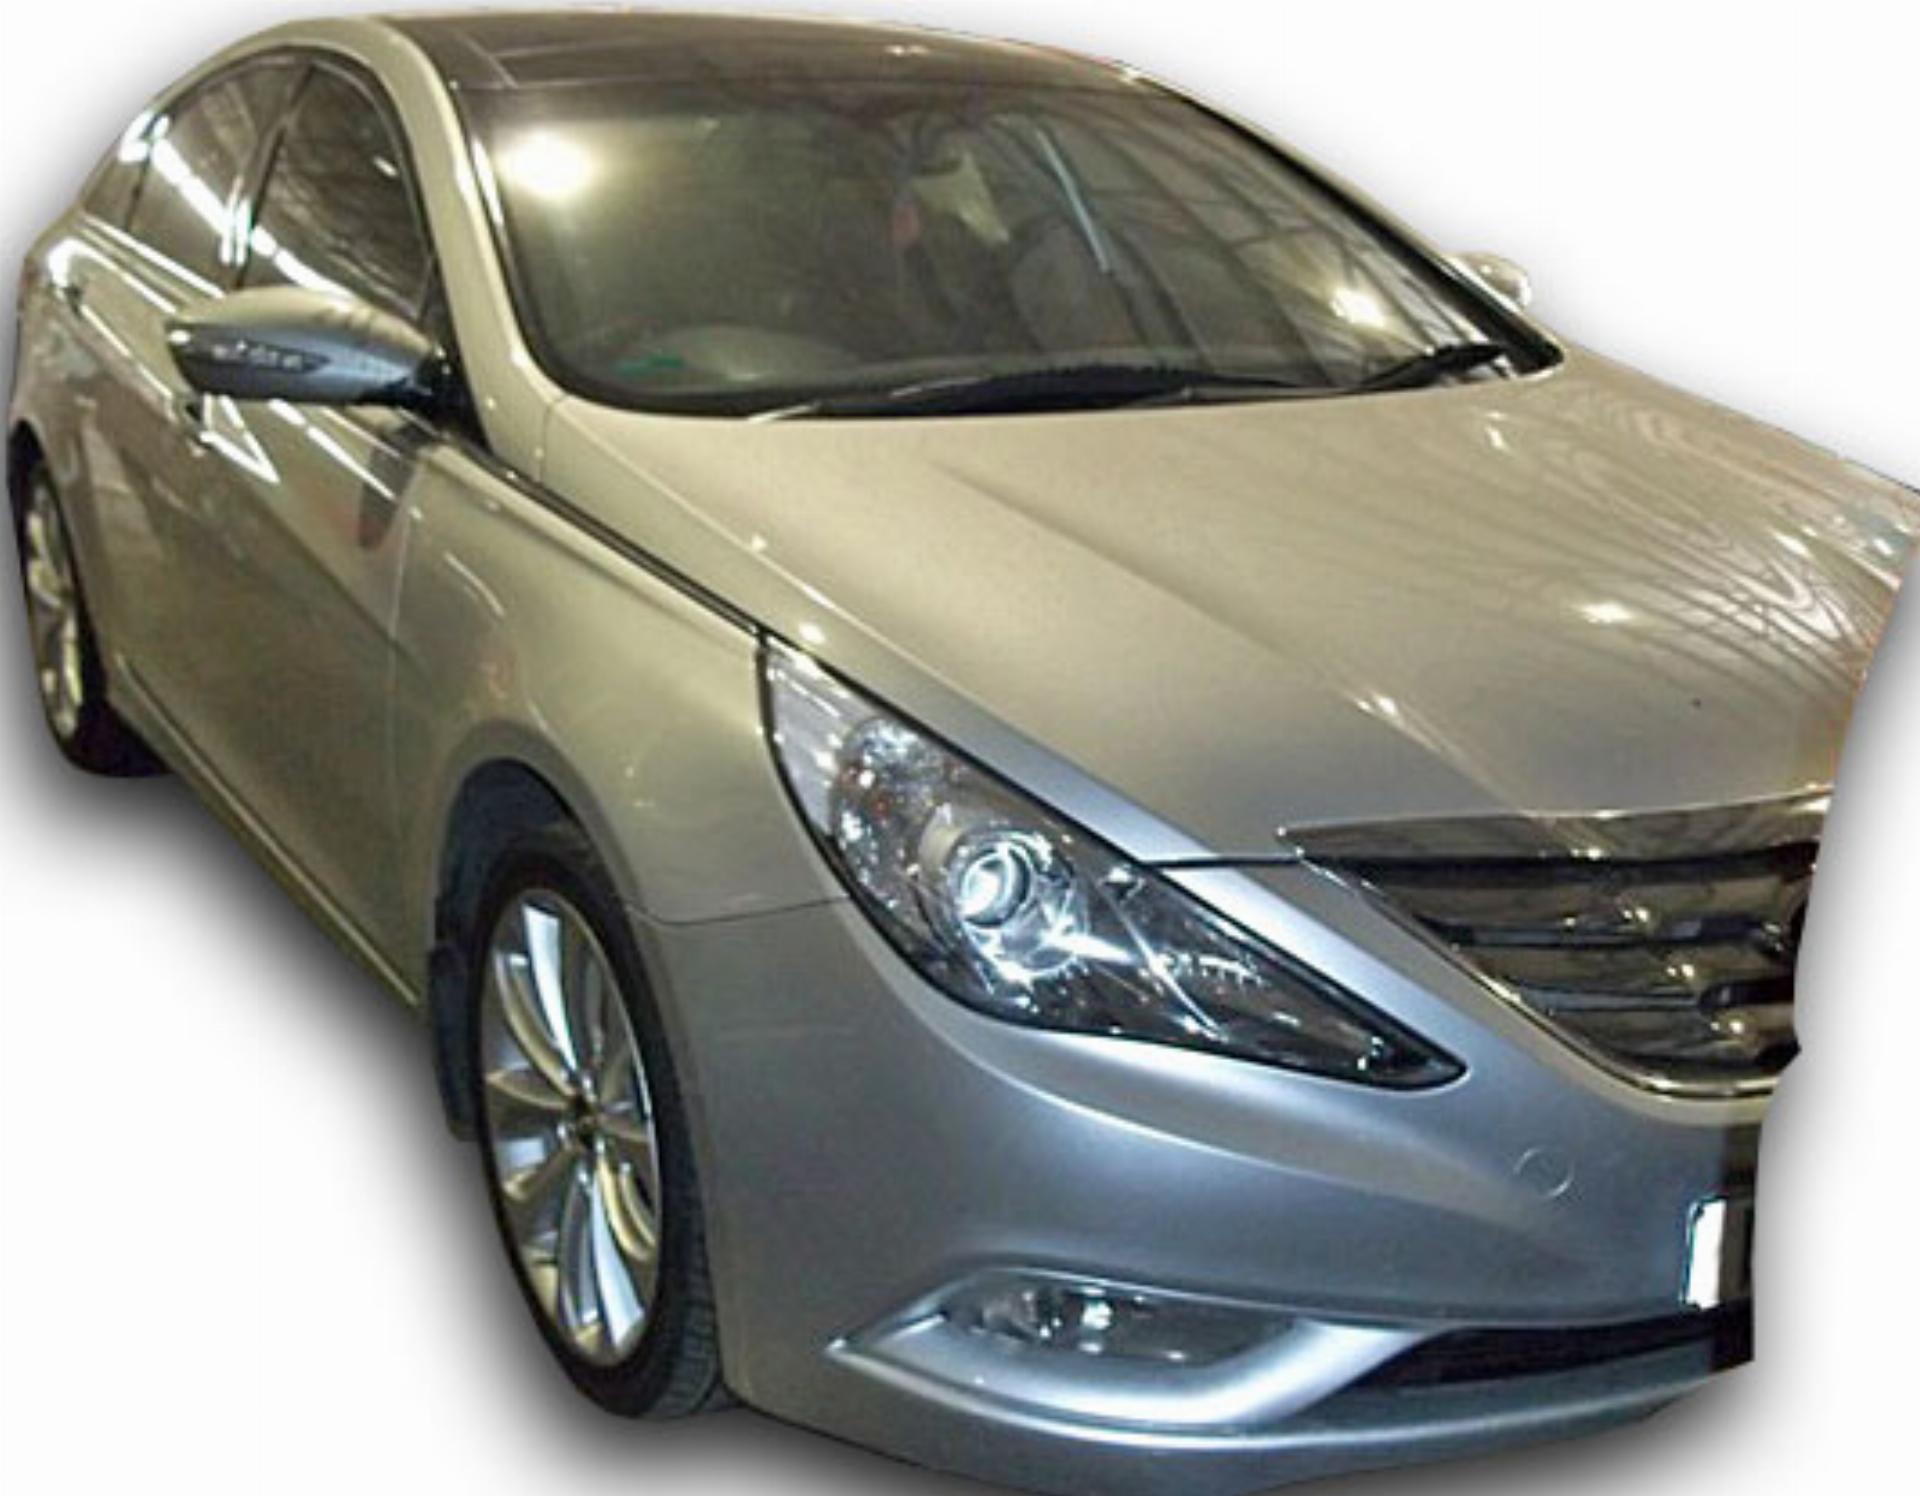 Repossessed Hyundai Sonata 2.4 GLS Exec 2012 on auction